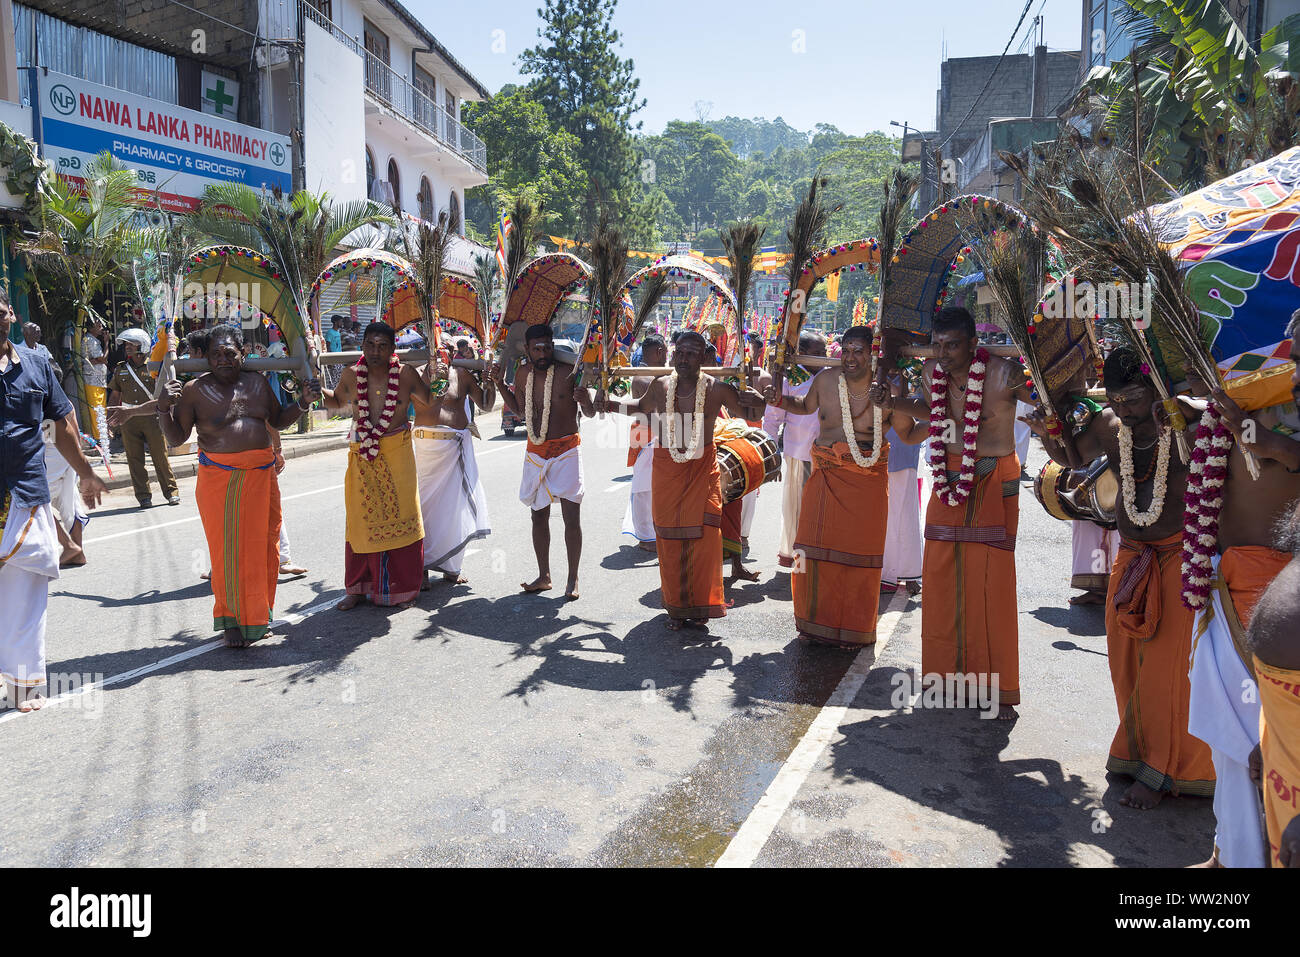 Pussellawa, Sri Lanka, 20.03.2019: Hindu Festival der Thaipusam - Body Piercing Rituale unter dem Blut Mond. Anhänger durch die Stadt paradieren Stockfoto